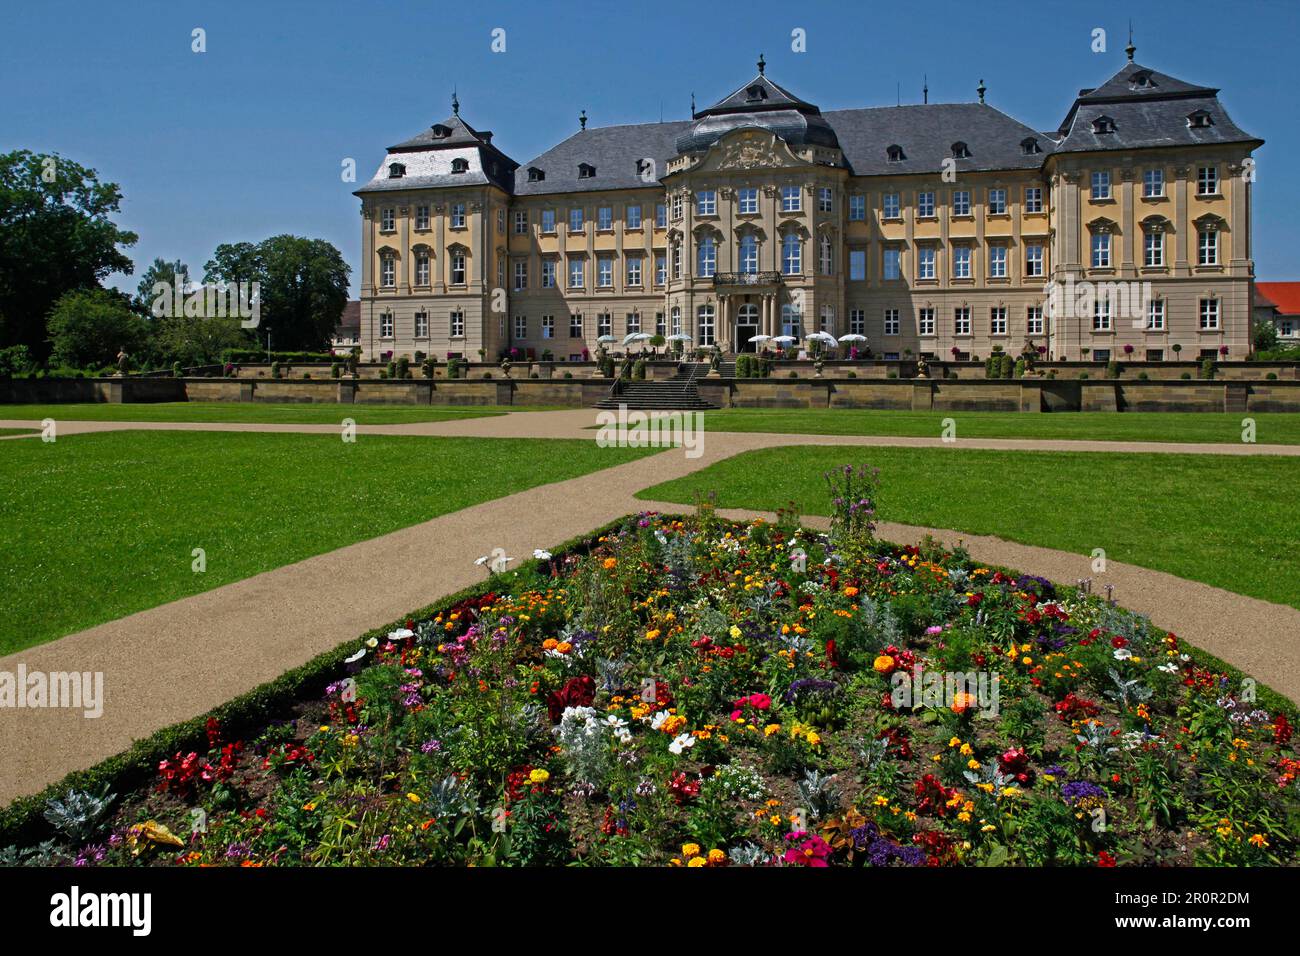 Schloss Werneck, Schlosspark, Werneck, Bezirk Schweinfurt, Niederfrankreich, Bayern, Deutschland Stockfoto